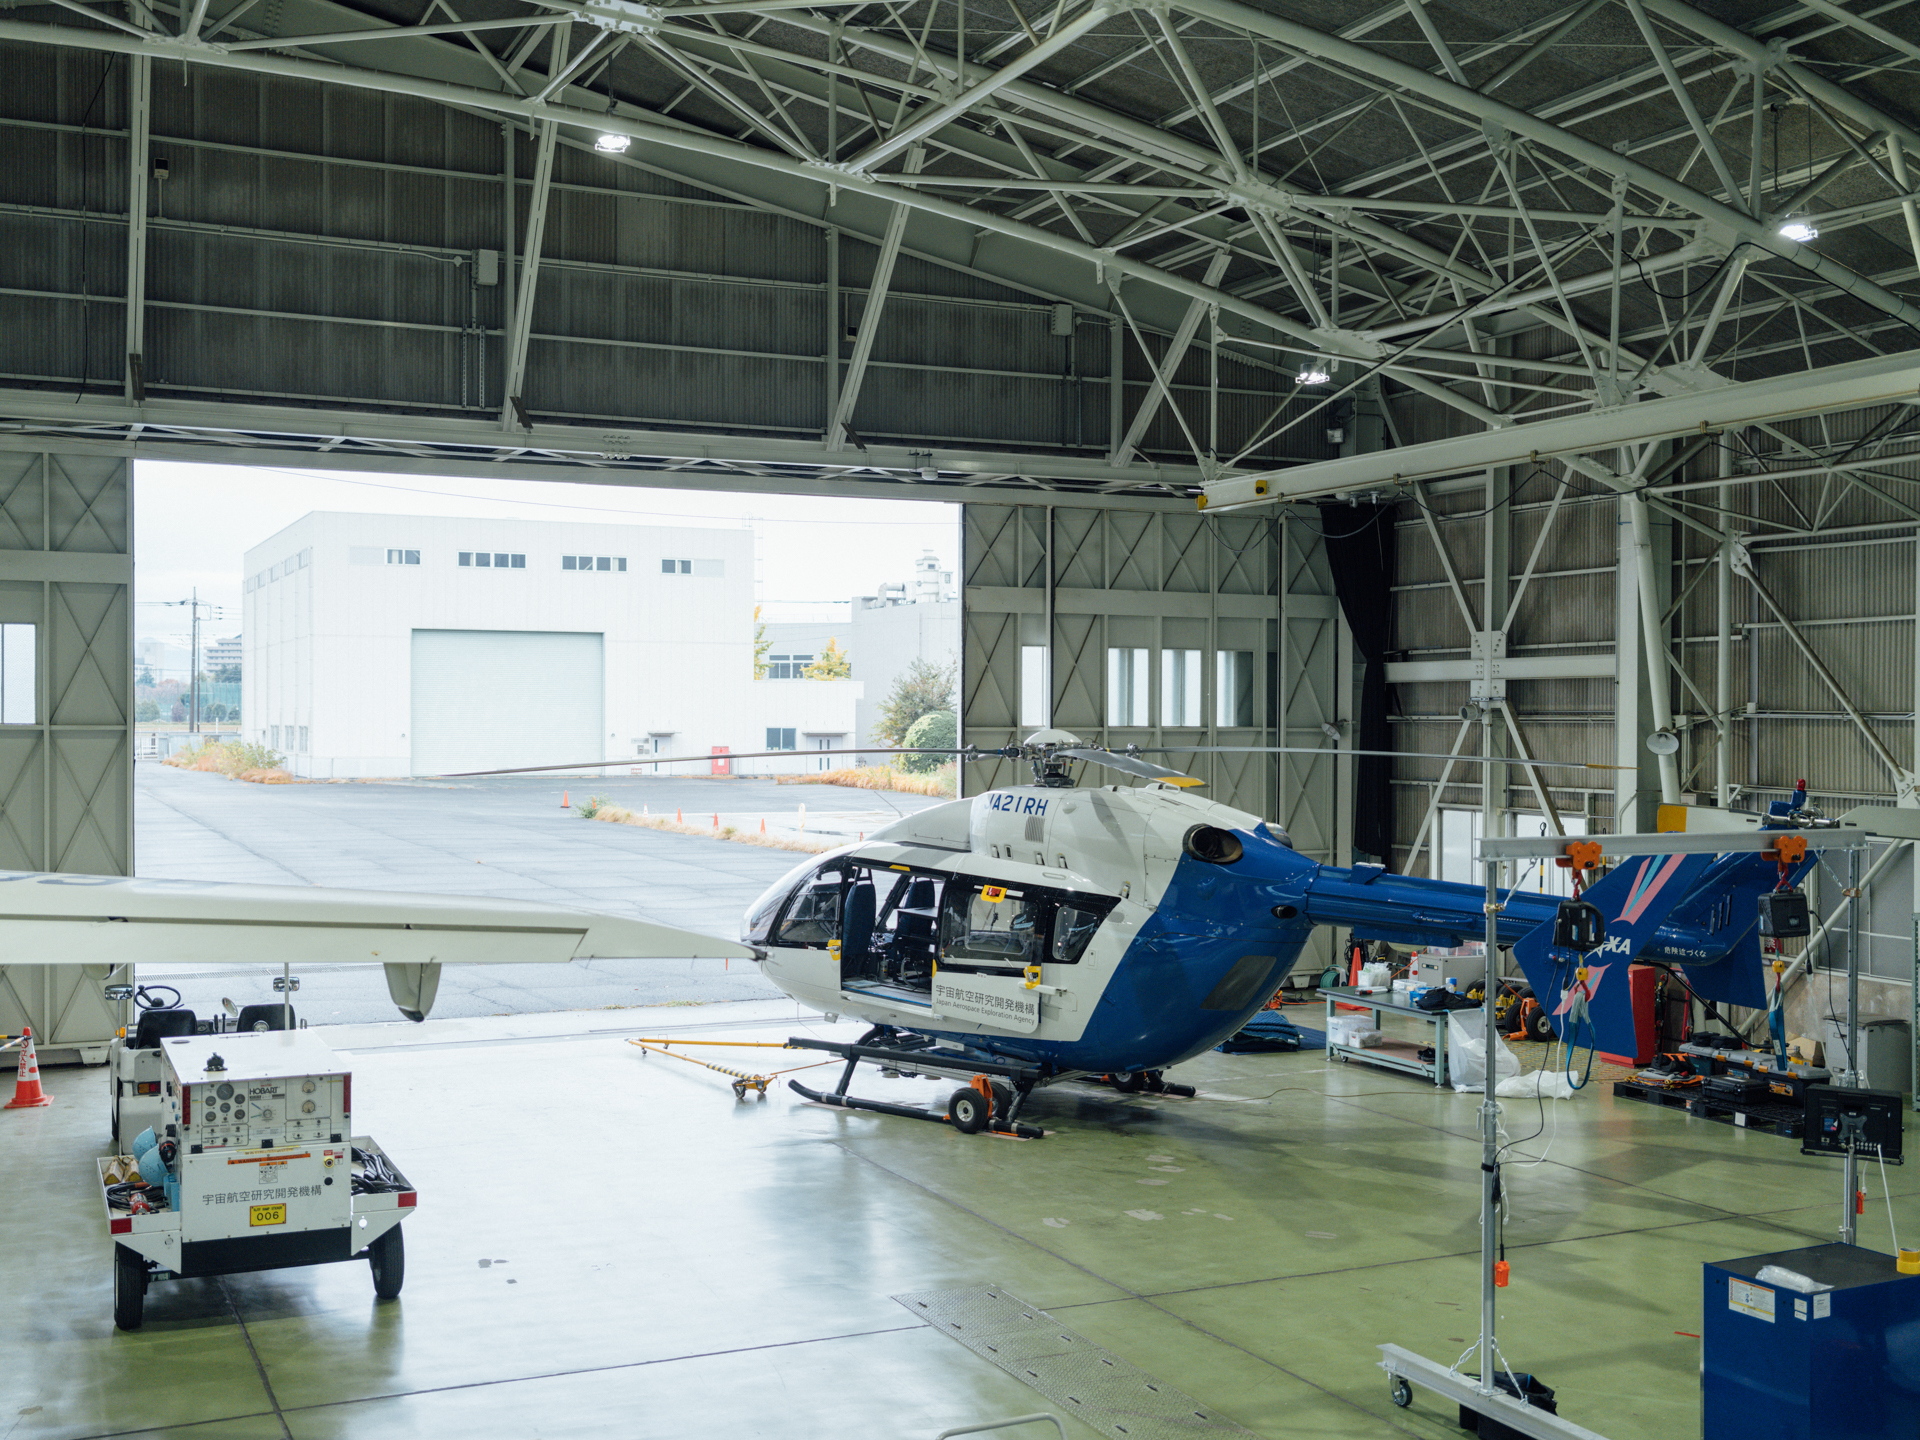 JAXAの飛行実験基地は、ここ調布航空宇宙センター飛行場分室のほかに、名古屋空港飛行研究拠点と、北海道の大樹航空宇宙実験場がある。